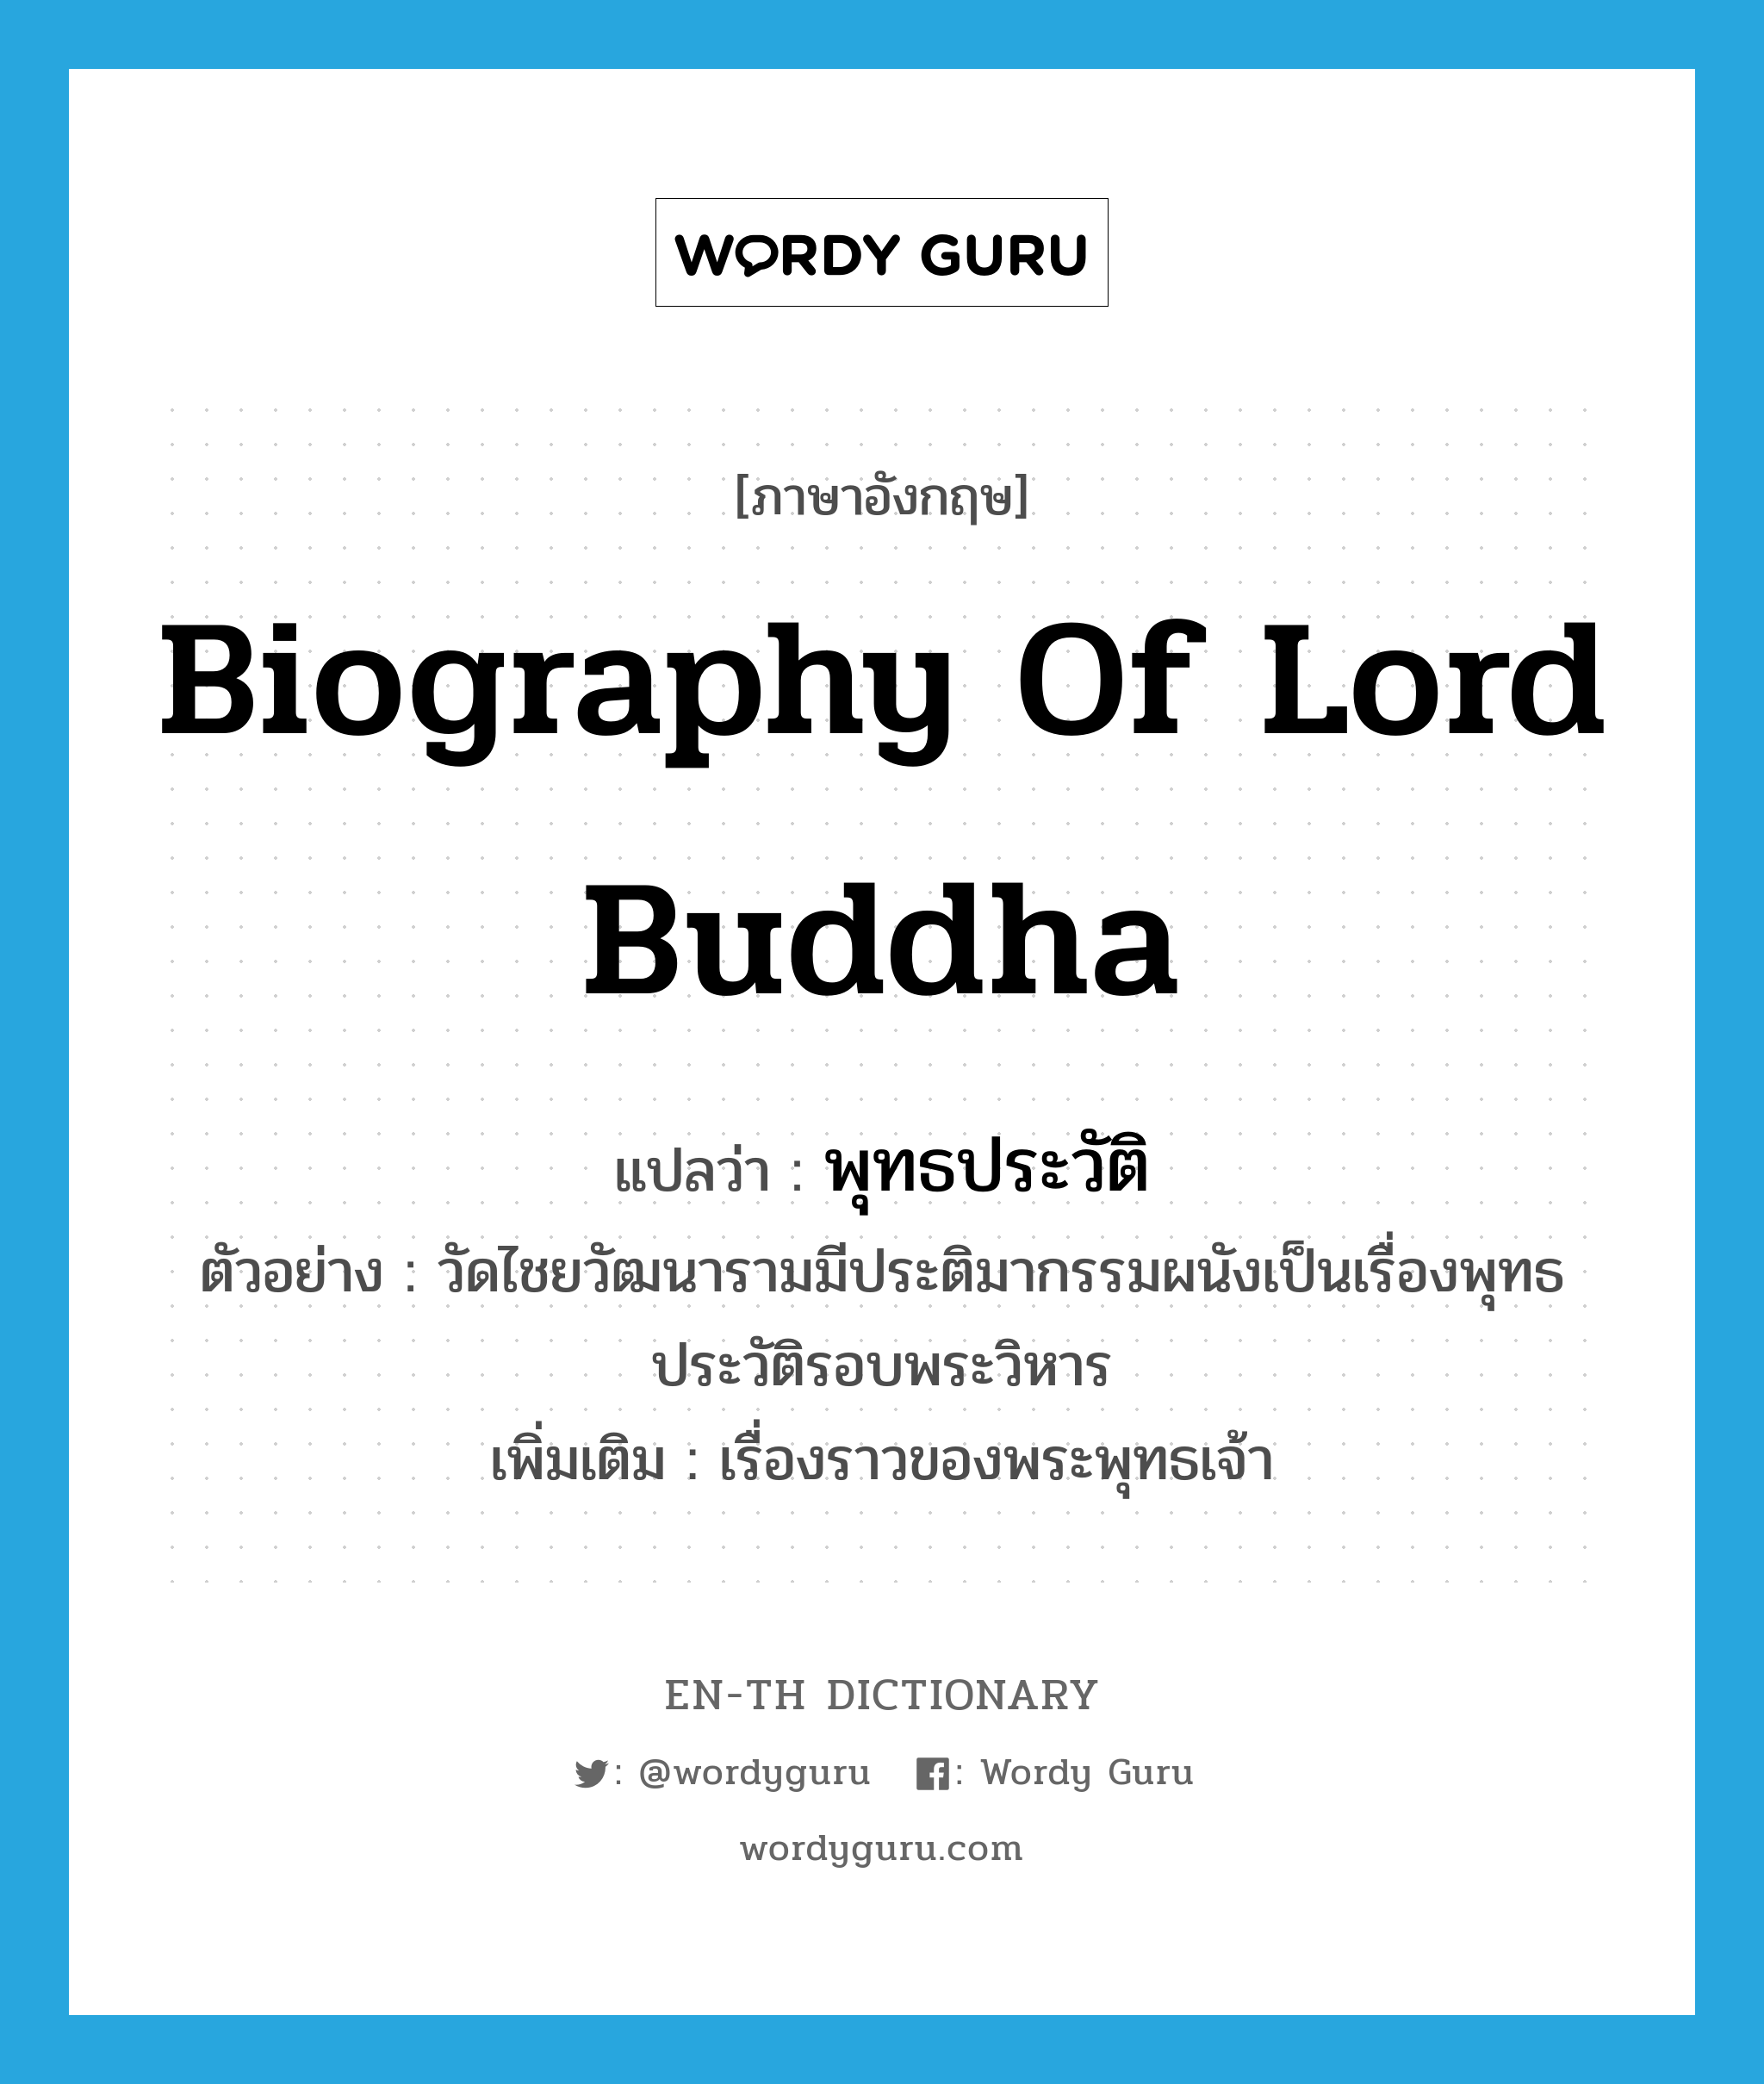 biography of Lord Buddha แปลว่า?, คำศัพท์ภาษาอังกฤษ biography of Lord Buddha แปลว่า พุทธประวัติ ประเภท N ตัวอย่าง วัดไชยวัฒนารามมีประติมากรรมผนังเป็นเรื่องพุทธประวัติรอบพระวิหาร เพิ่มเติม เรื่องราวของพระพุทธเจ้า หมวด N